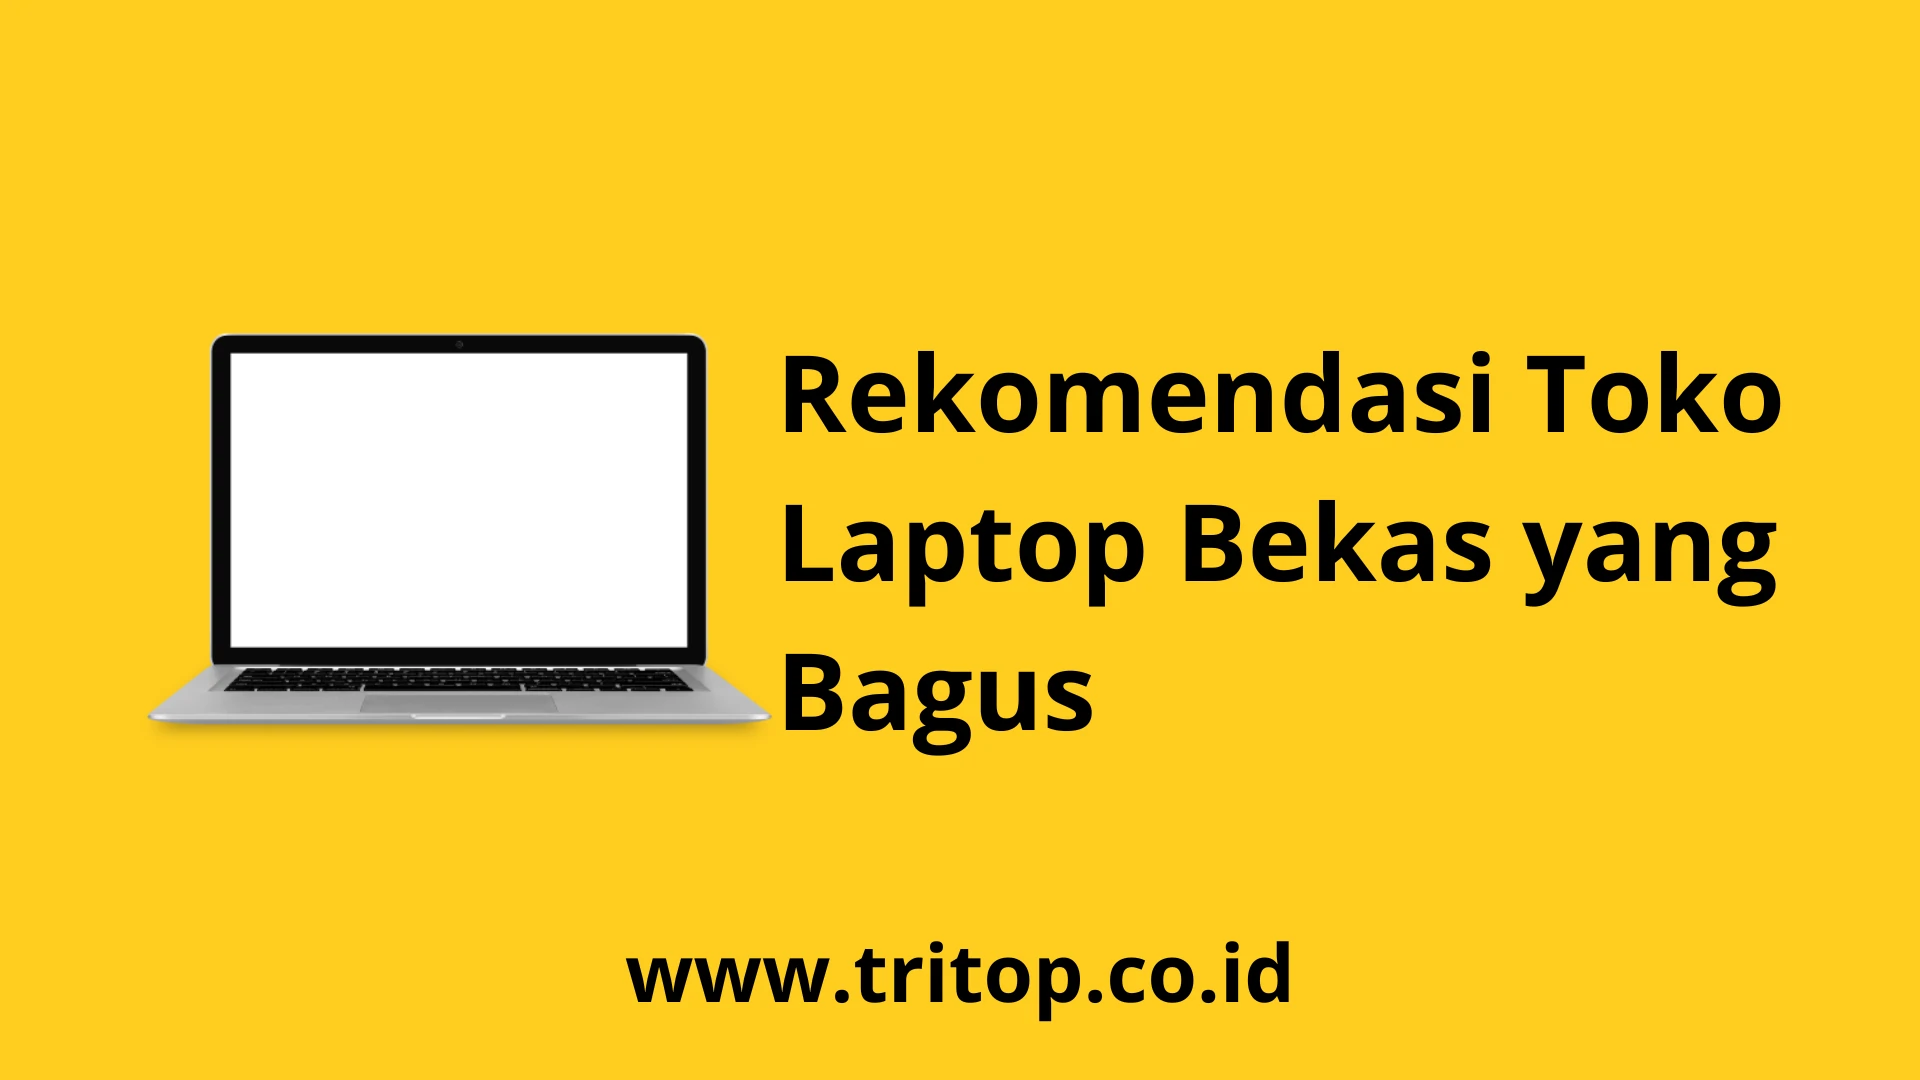 Toko Bagus Bekas Laptop www.tritop.co.id